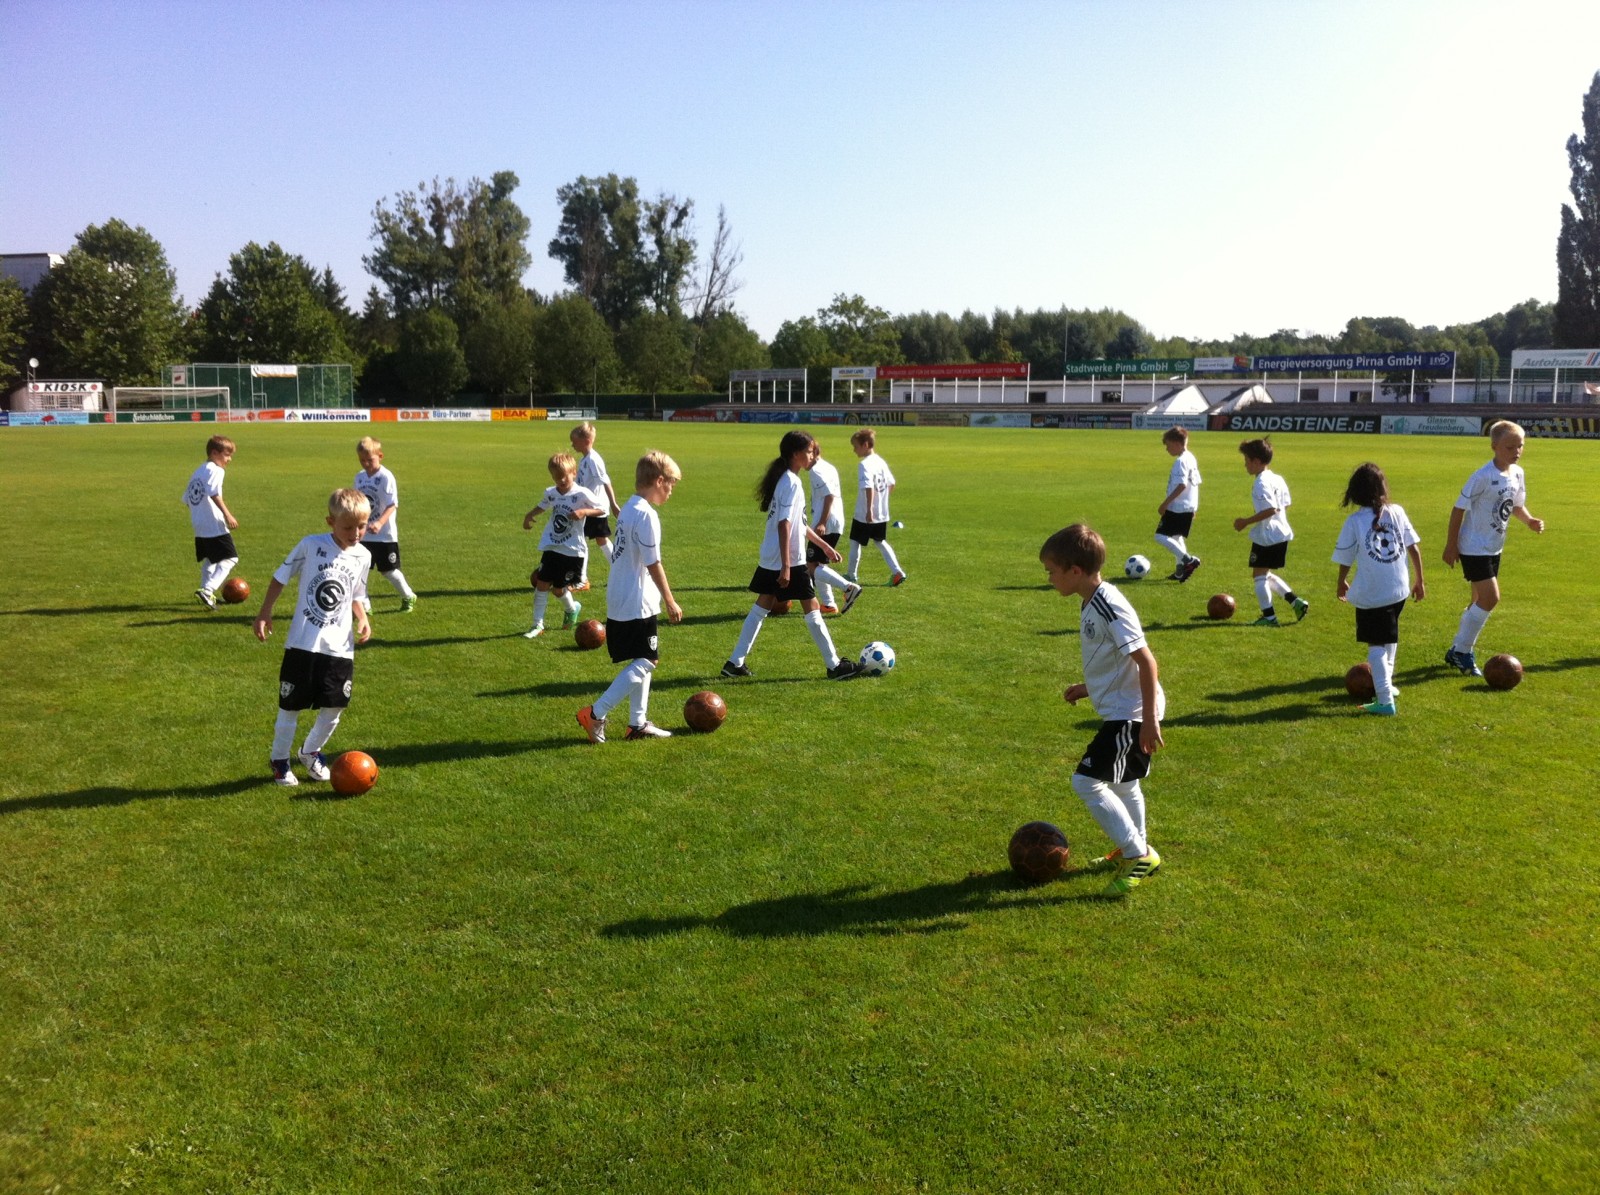 Freizeit, Sonne, Fußball - ideale Bedingungen fürs Kicken beim VfL. Foto: VfL